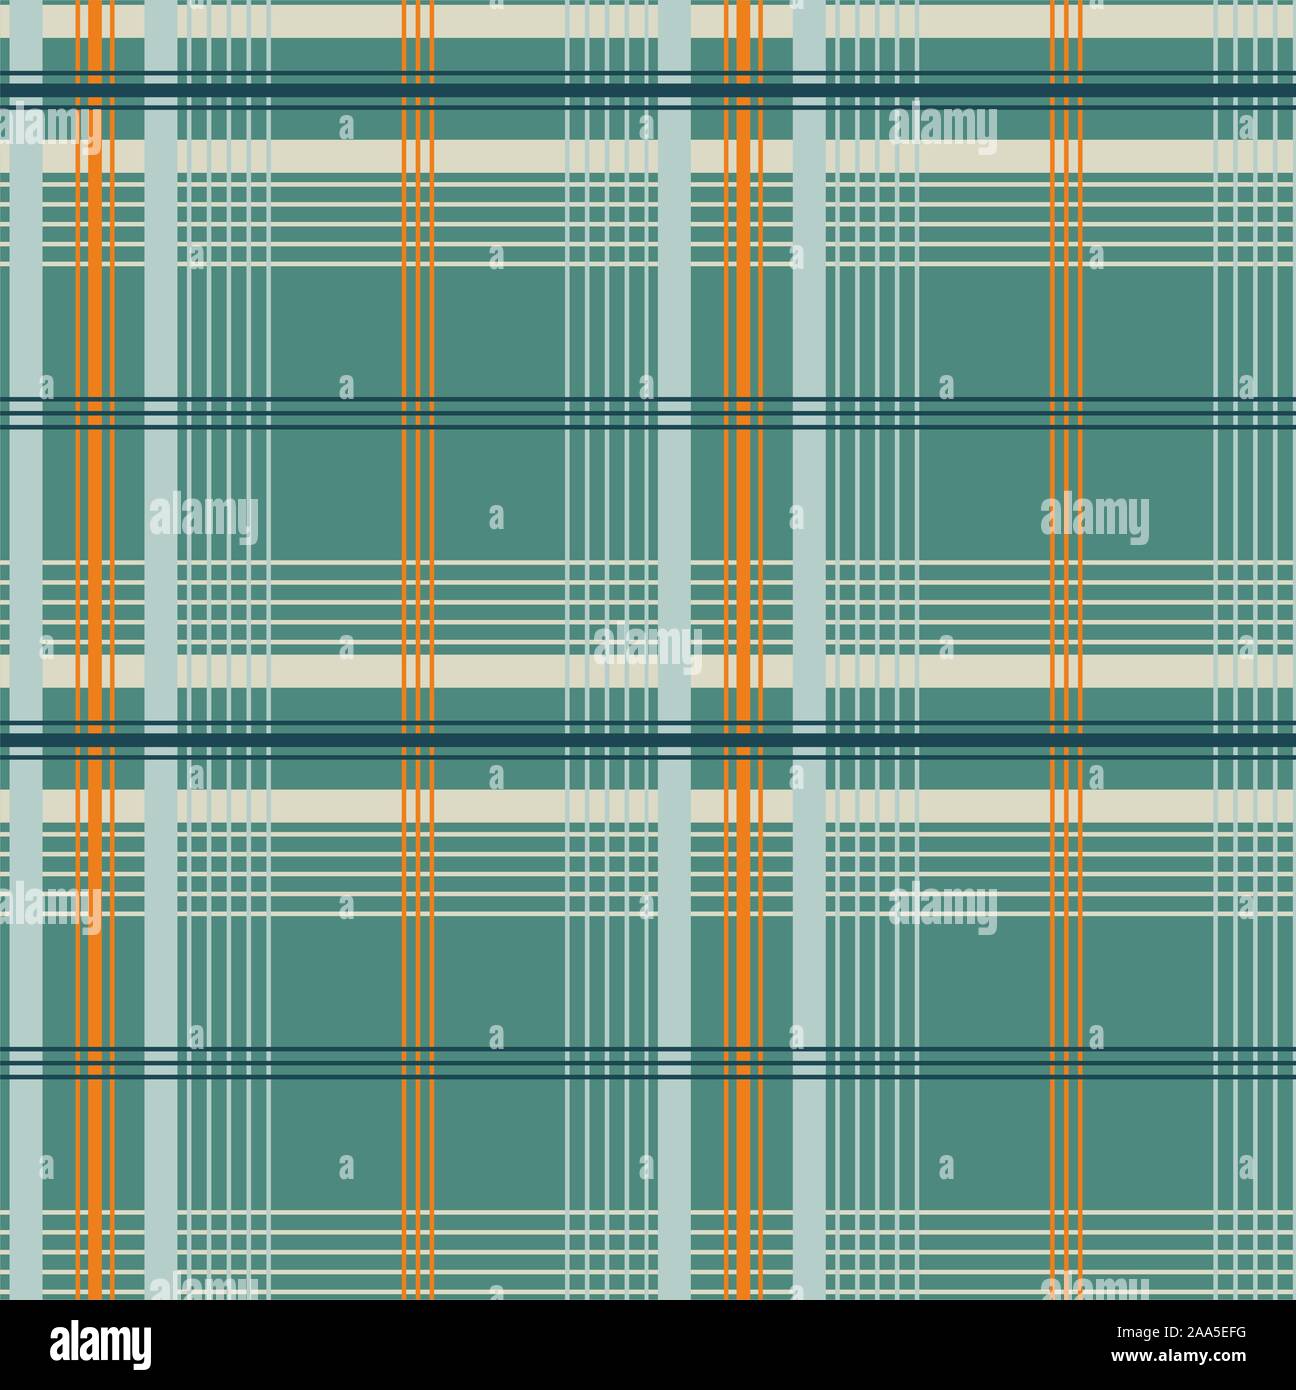 Tartan scozzese plaid pattern. Seamless forme diagonali dello sfondo. - Vettore Illustrazione Vettoriale